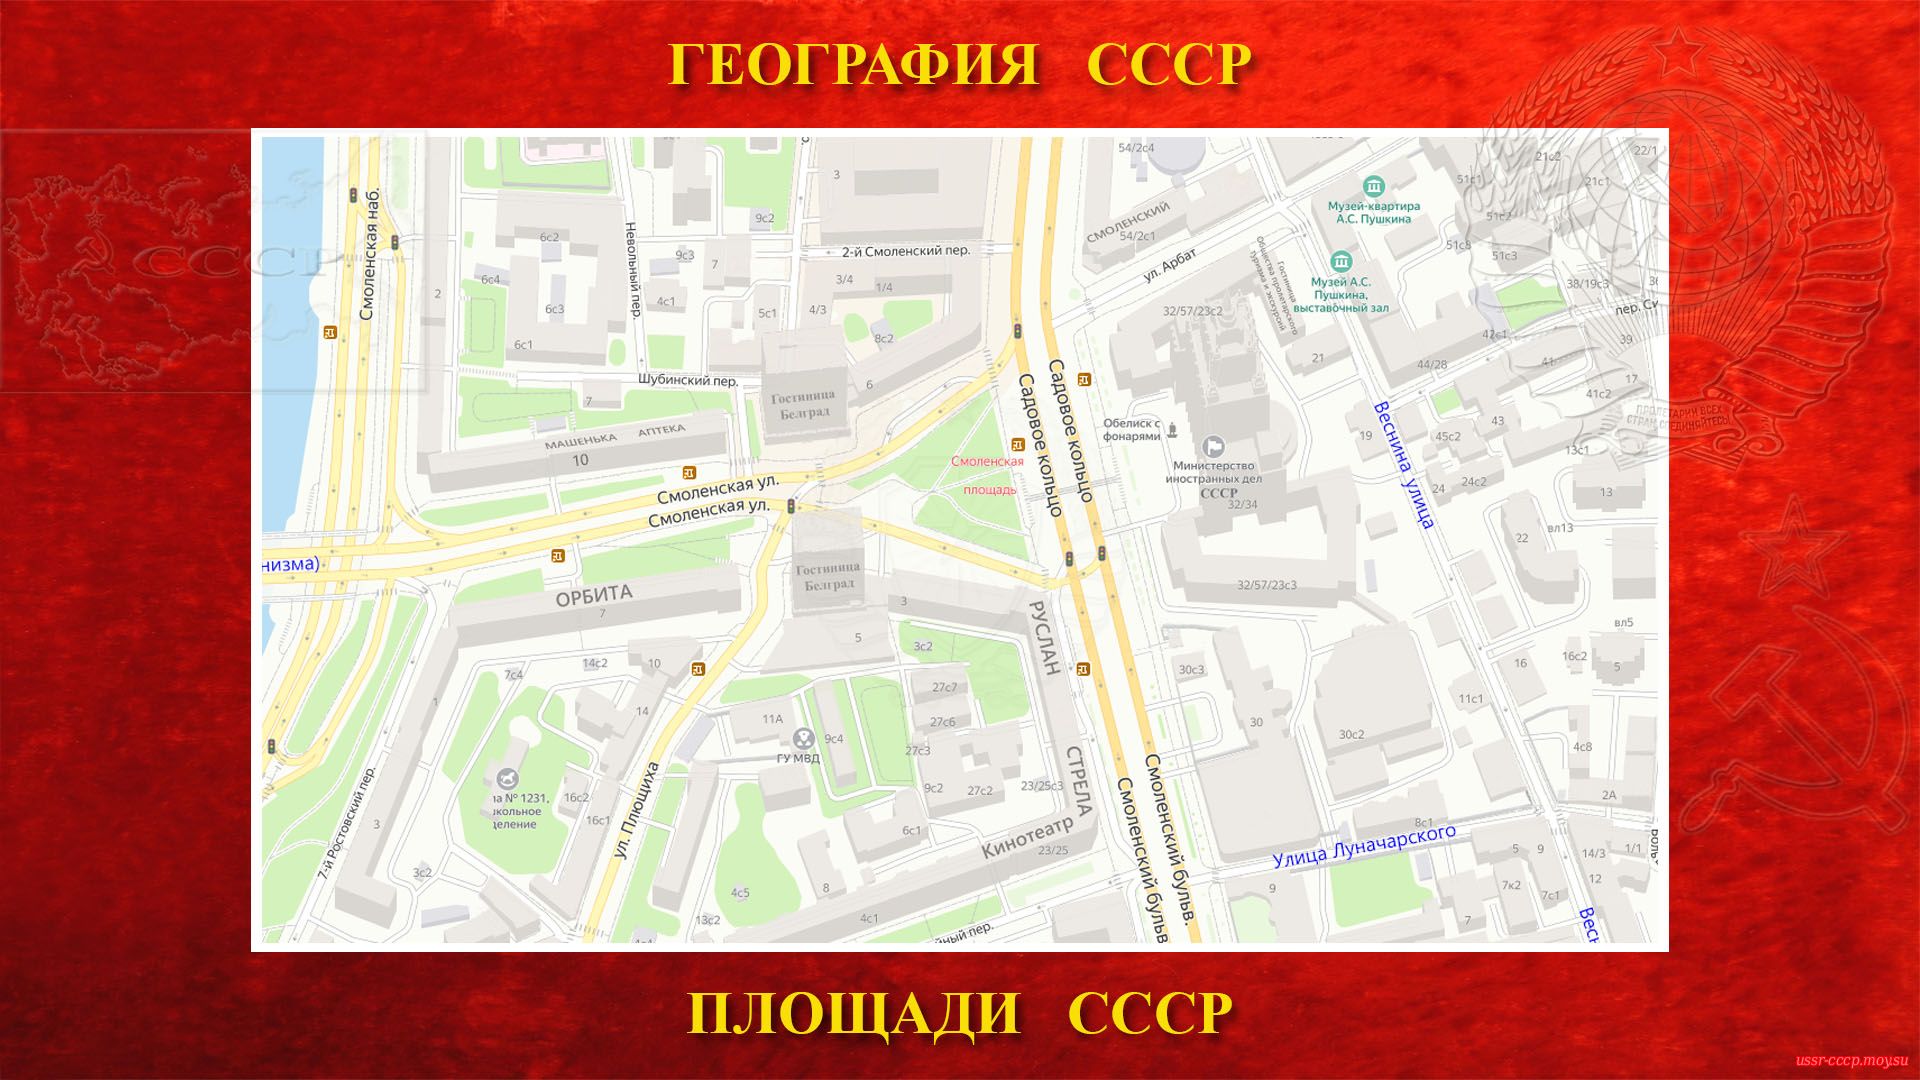 Смоленская площадь — Площадь в центре Москвы